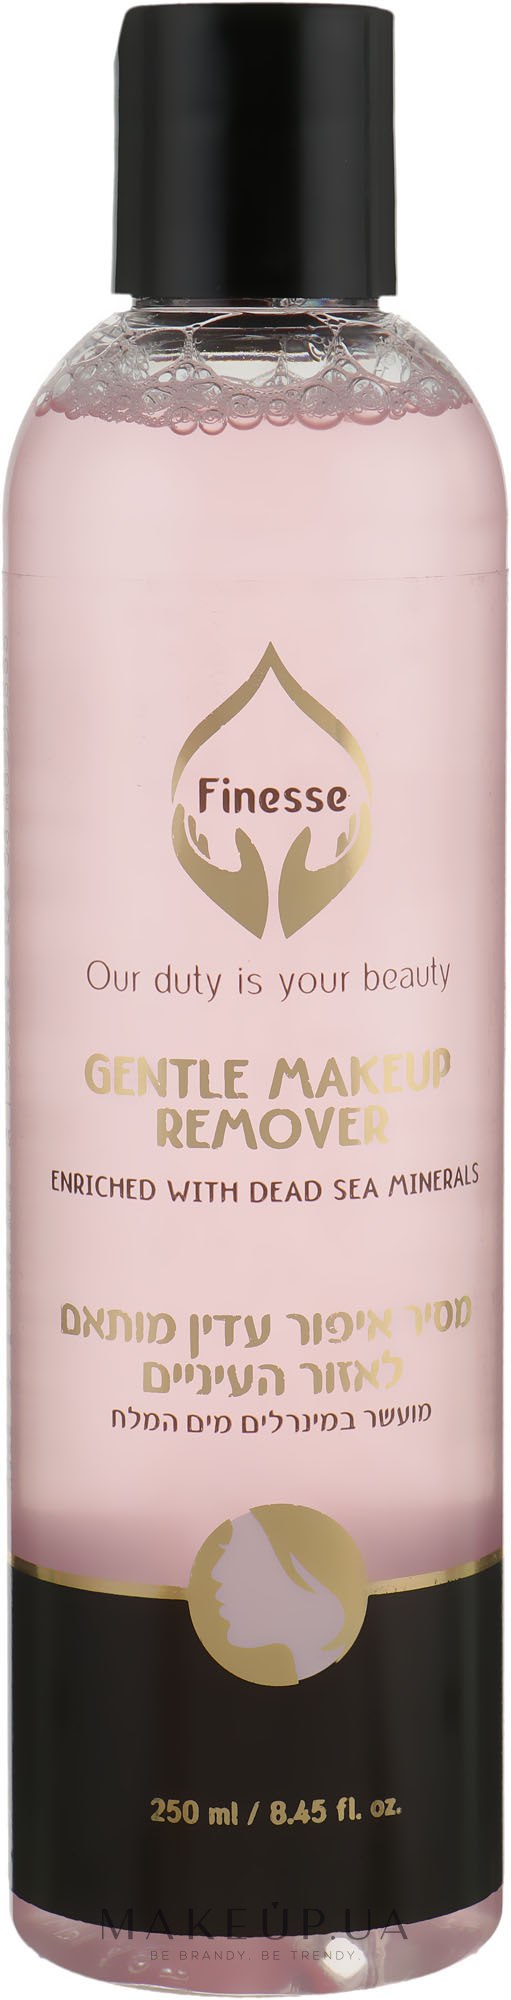 Ніжний засіб для видалення мвкіяжу з обличчя і очей - Finesse Gentle Makeup Remover — фото 250ml